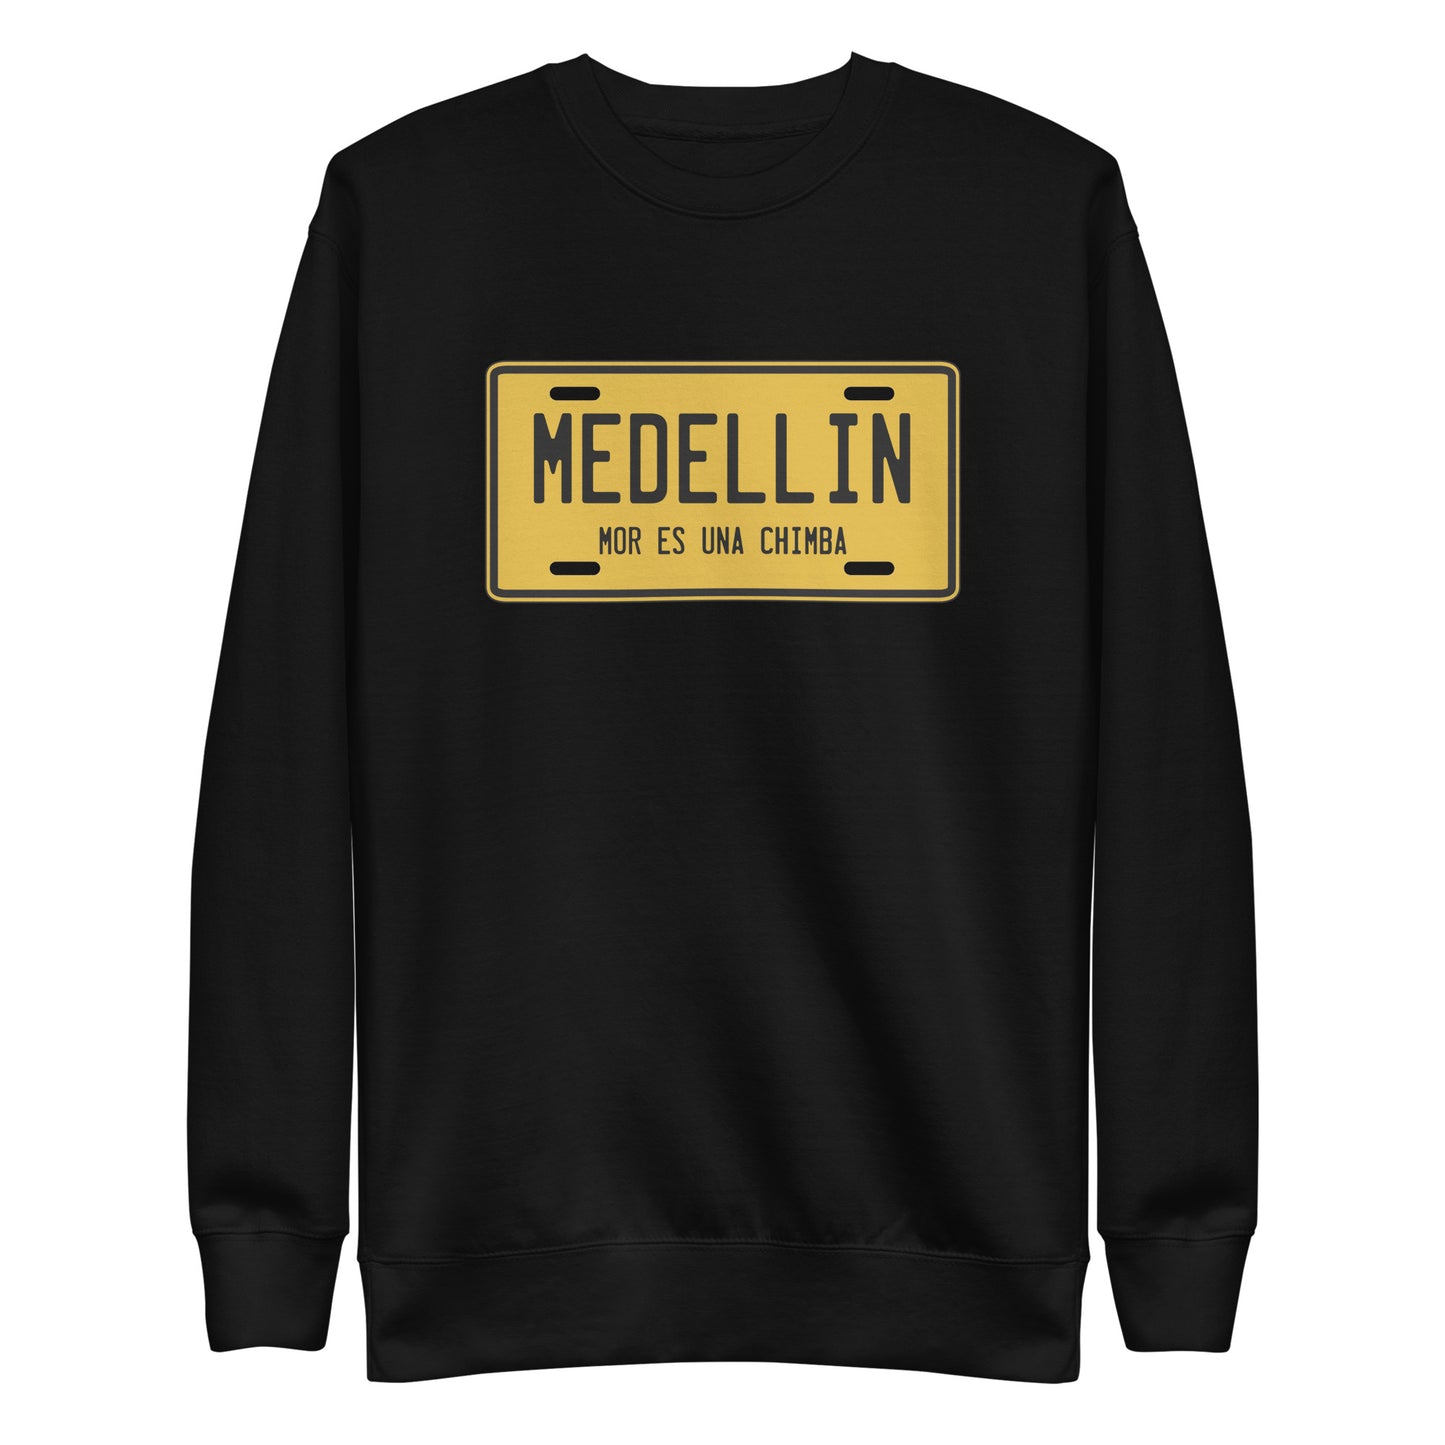 Suéter de Medellin Mor es una chimba ,Descubre calidad excepcional y estampados duraderos. Encuentra estilo y orgullo en cada prenda. Compra ahora!